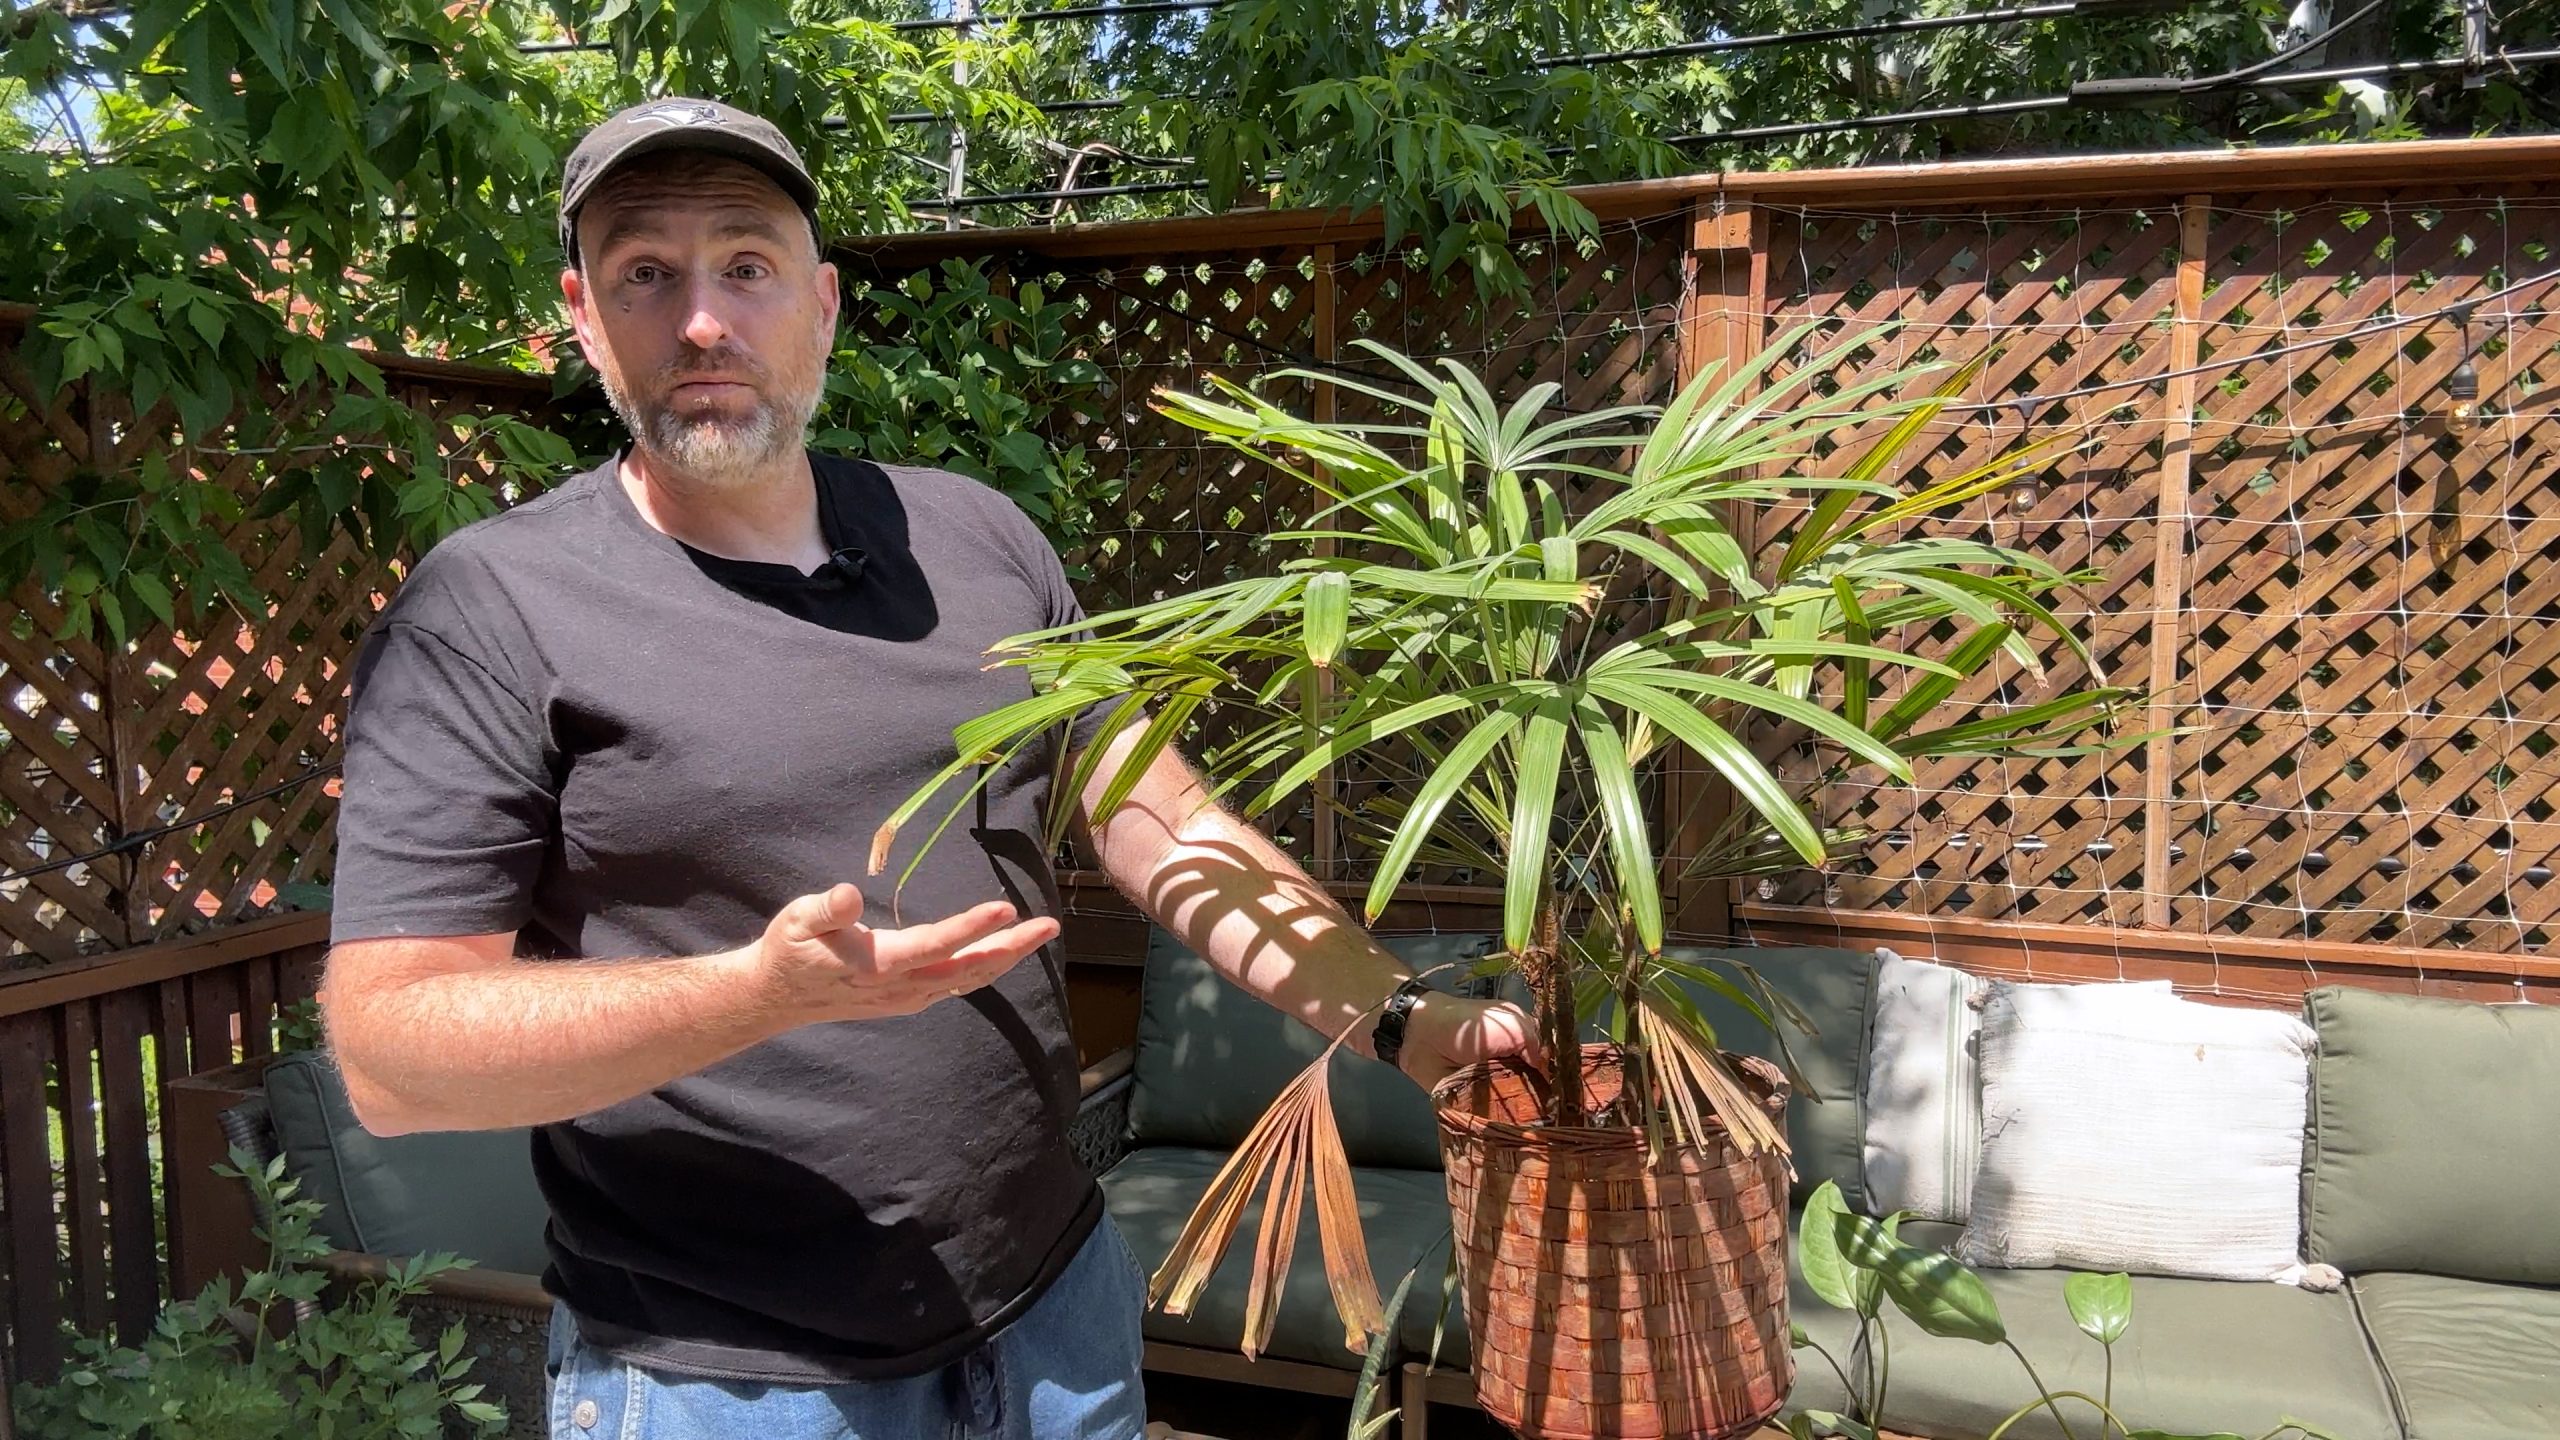 Vendredi vidéo: Sortir ses plantes d’intérieur pour l’été